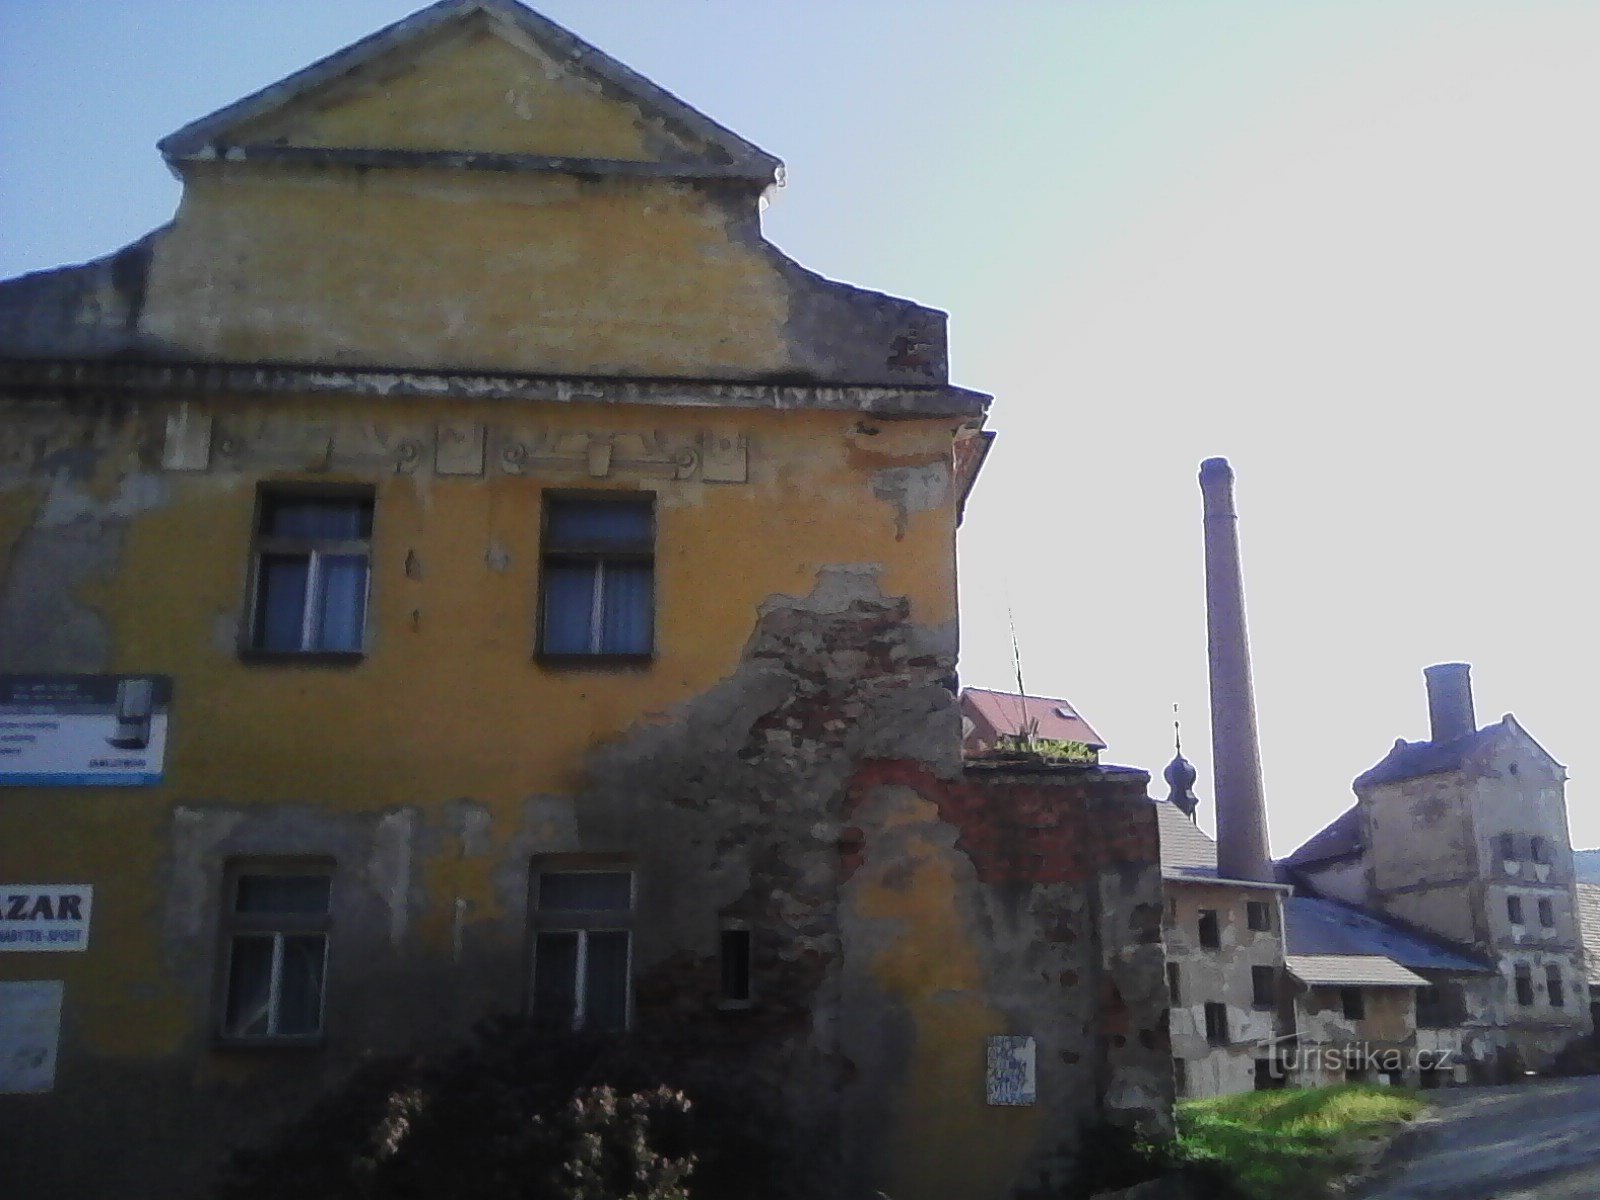 2. Le vieux château de Votice. Une forteresse du XVe siècle, mentionnée pour la première fois en 15. Le château demeure